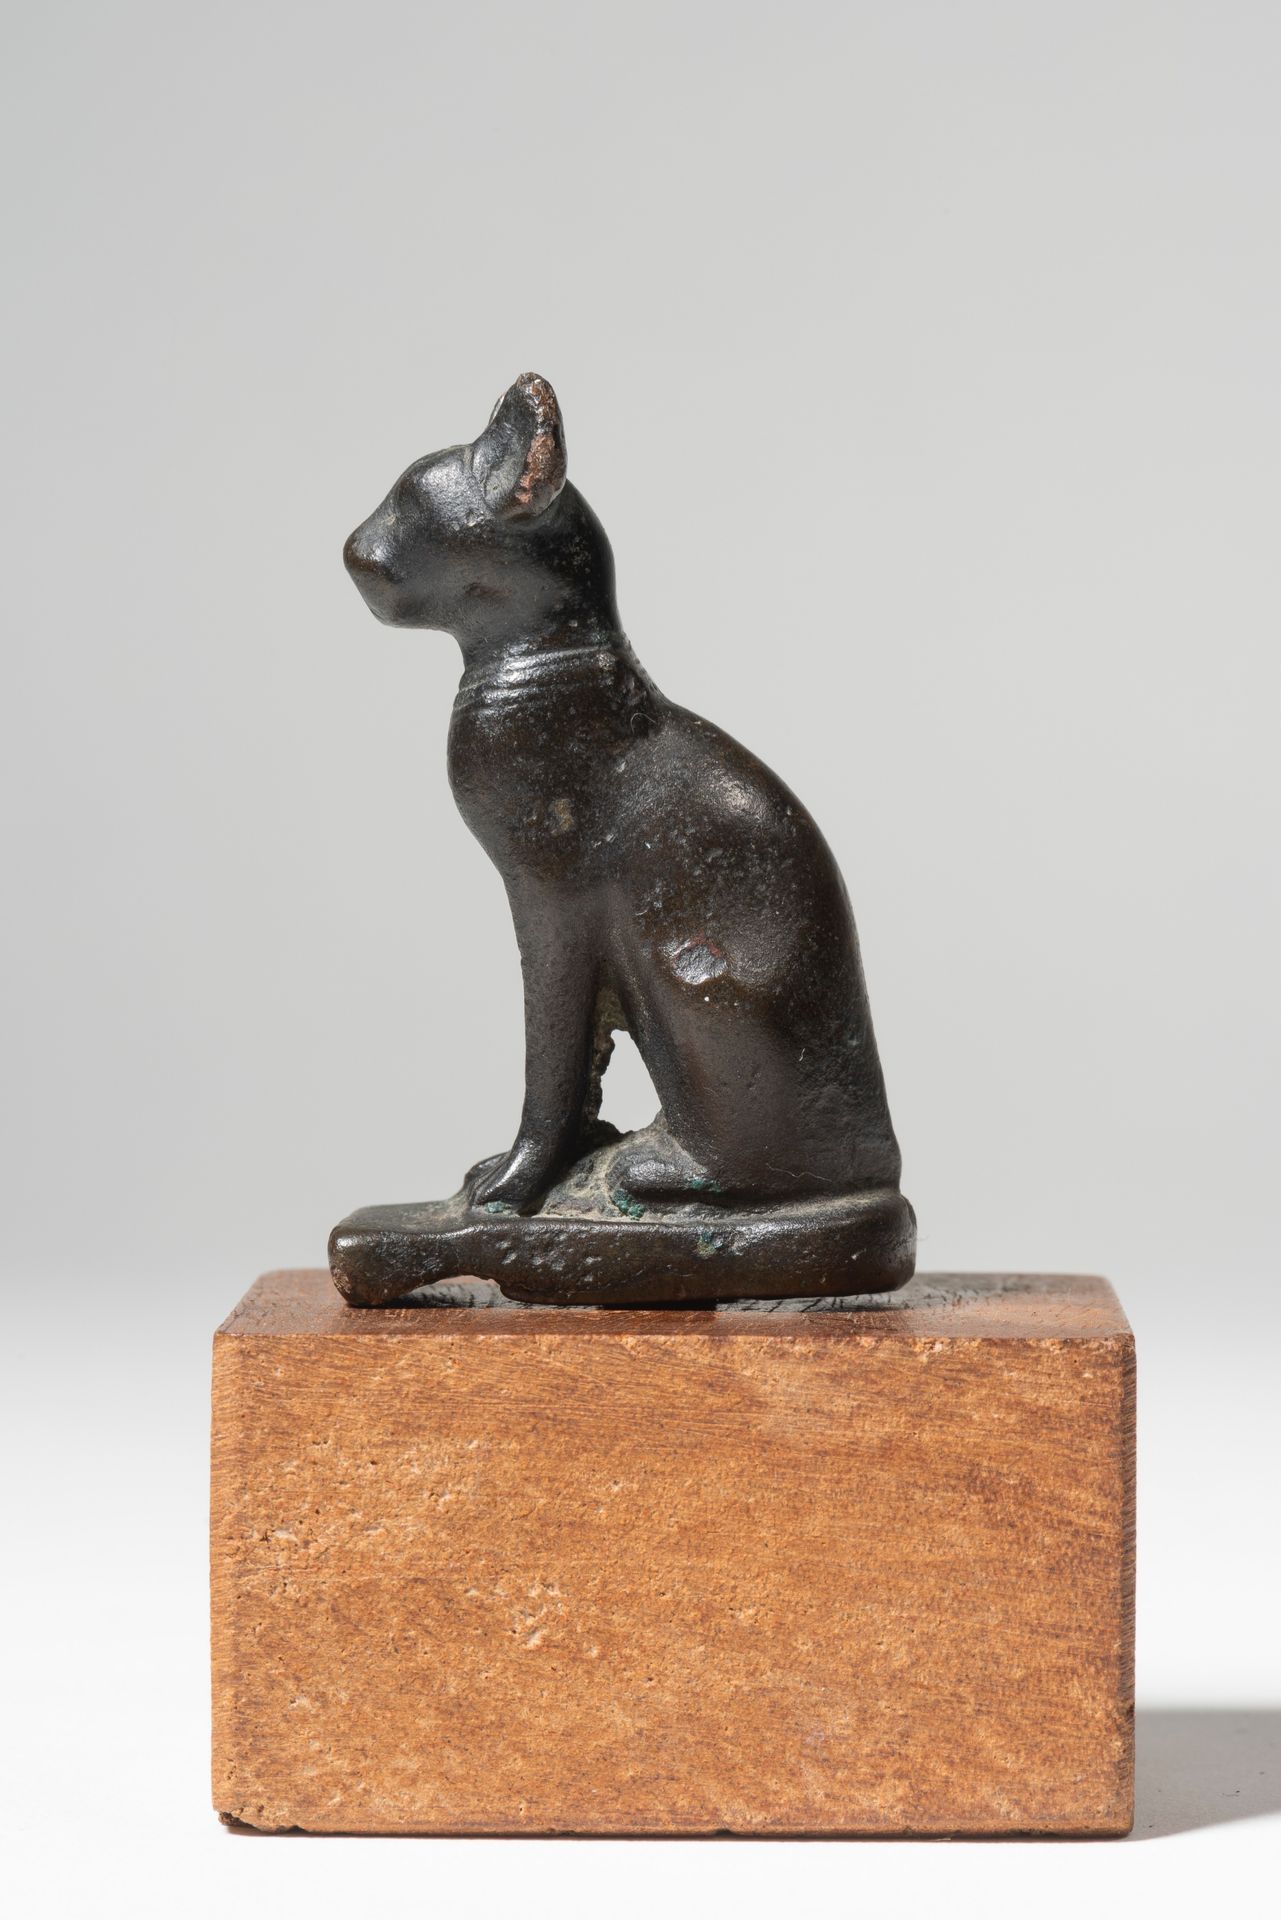 Statuette représentant la chatte Bastet assise 
EGYPTE, BASSE EPOQUE




Statuet&hellip;